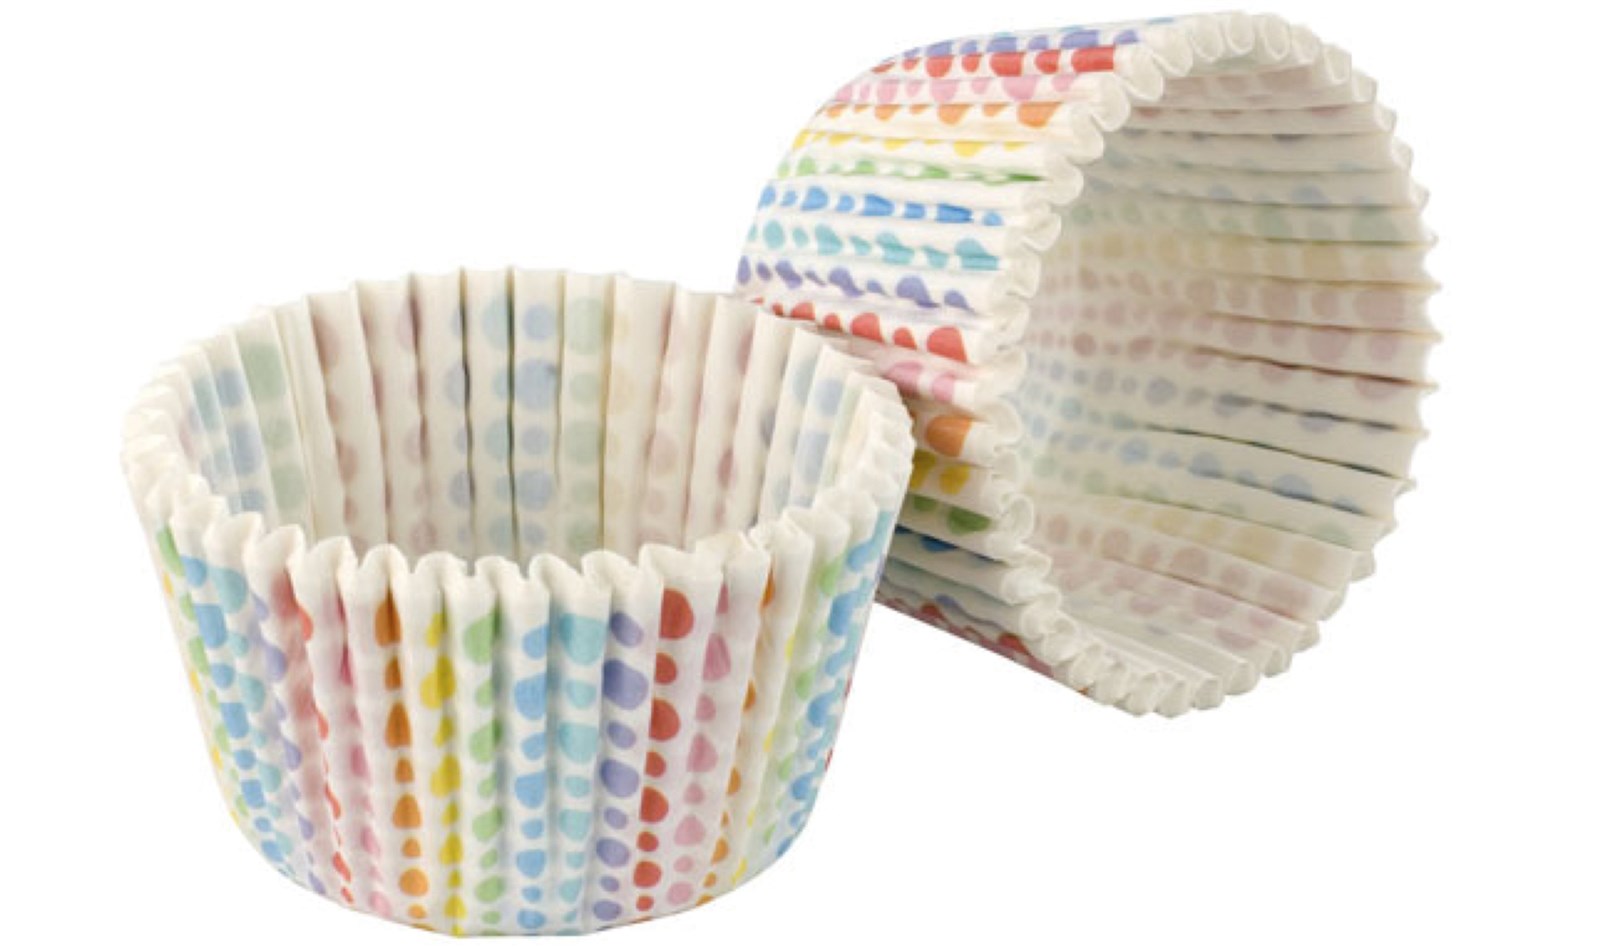 32 Stk. Cupcake Formen Rainbow, weiss in Farbig/Weiss Gepunktet präsentiert im Onlineshop von KAQTU Design AG. Backen ist von Tala